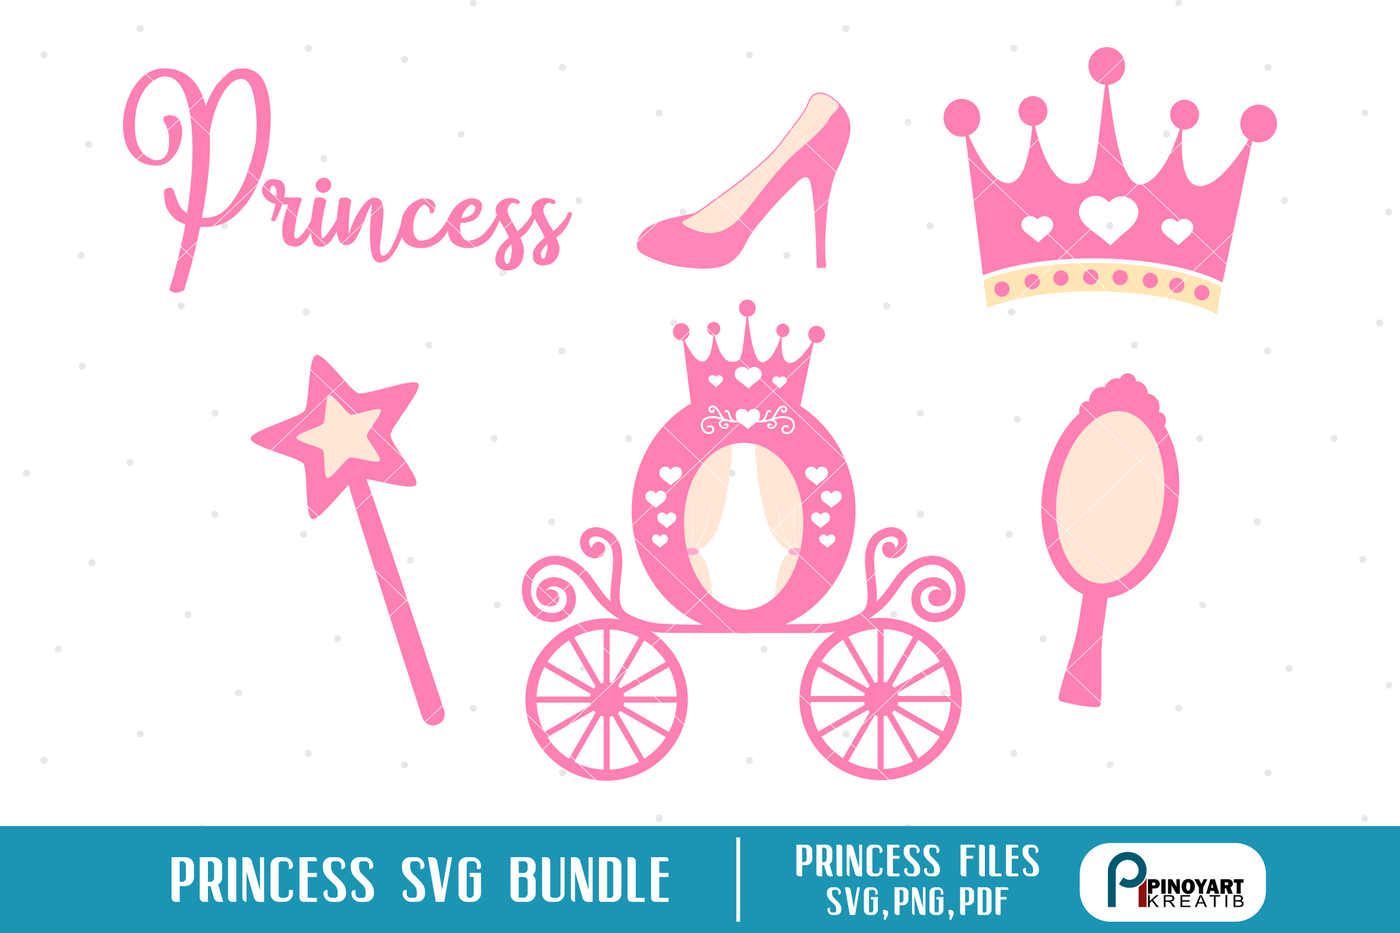 Download princess svg, princess svg file, wand svg, crown svg ...